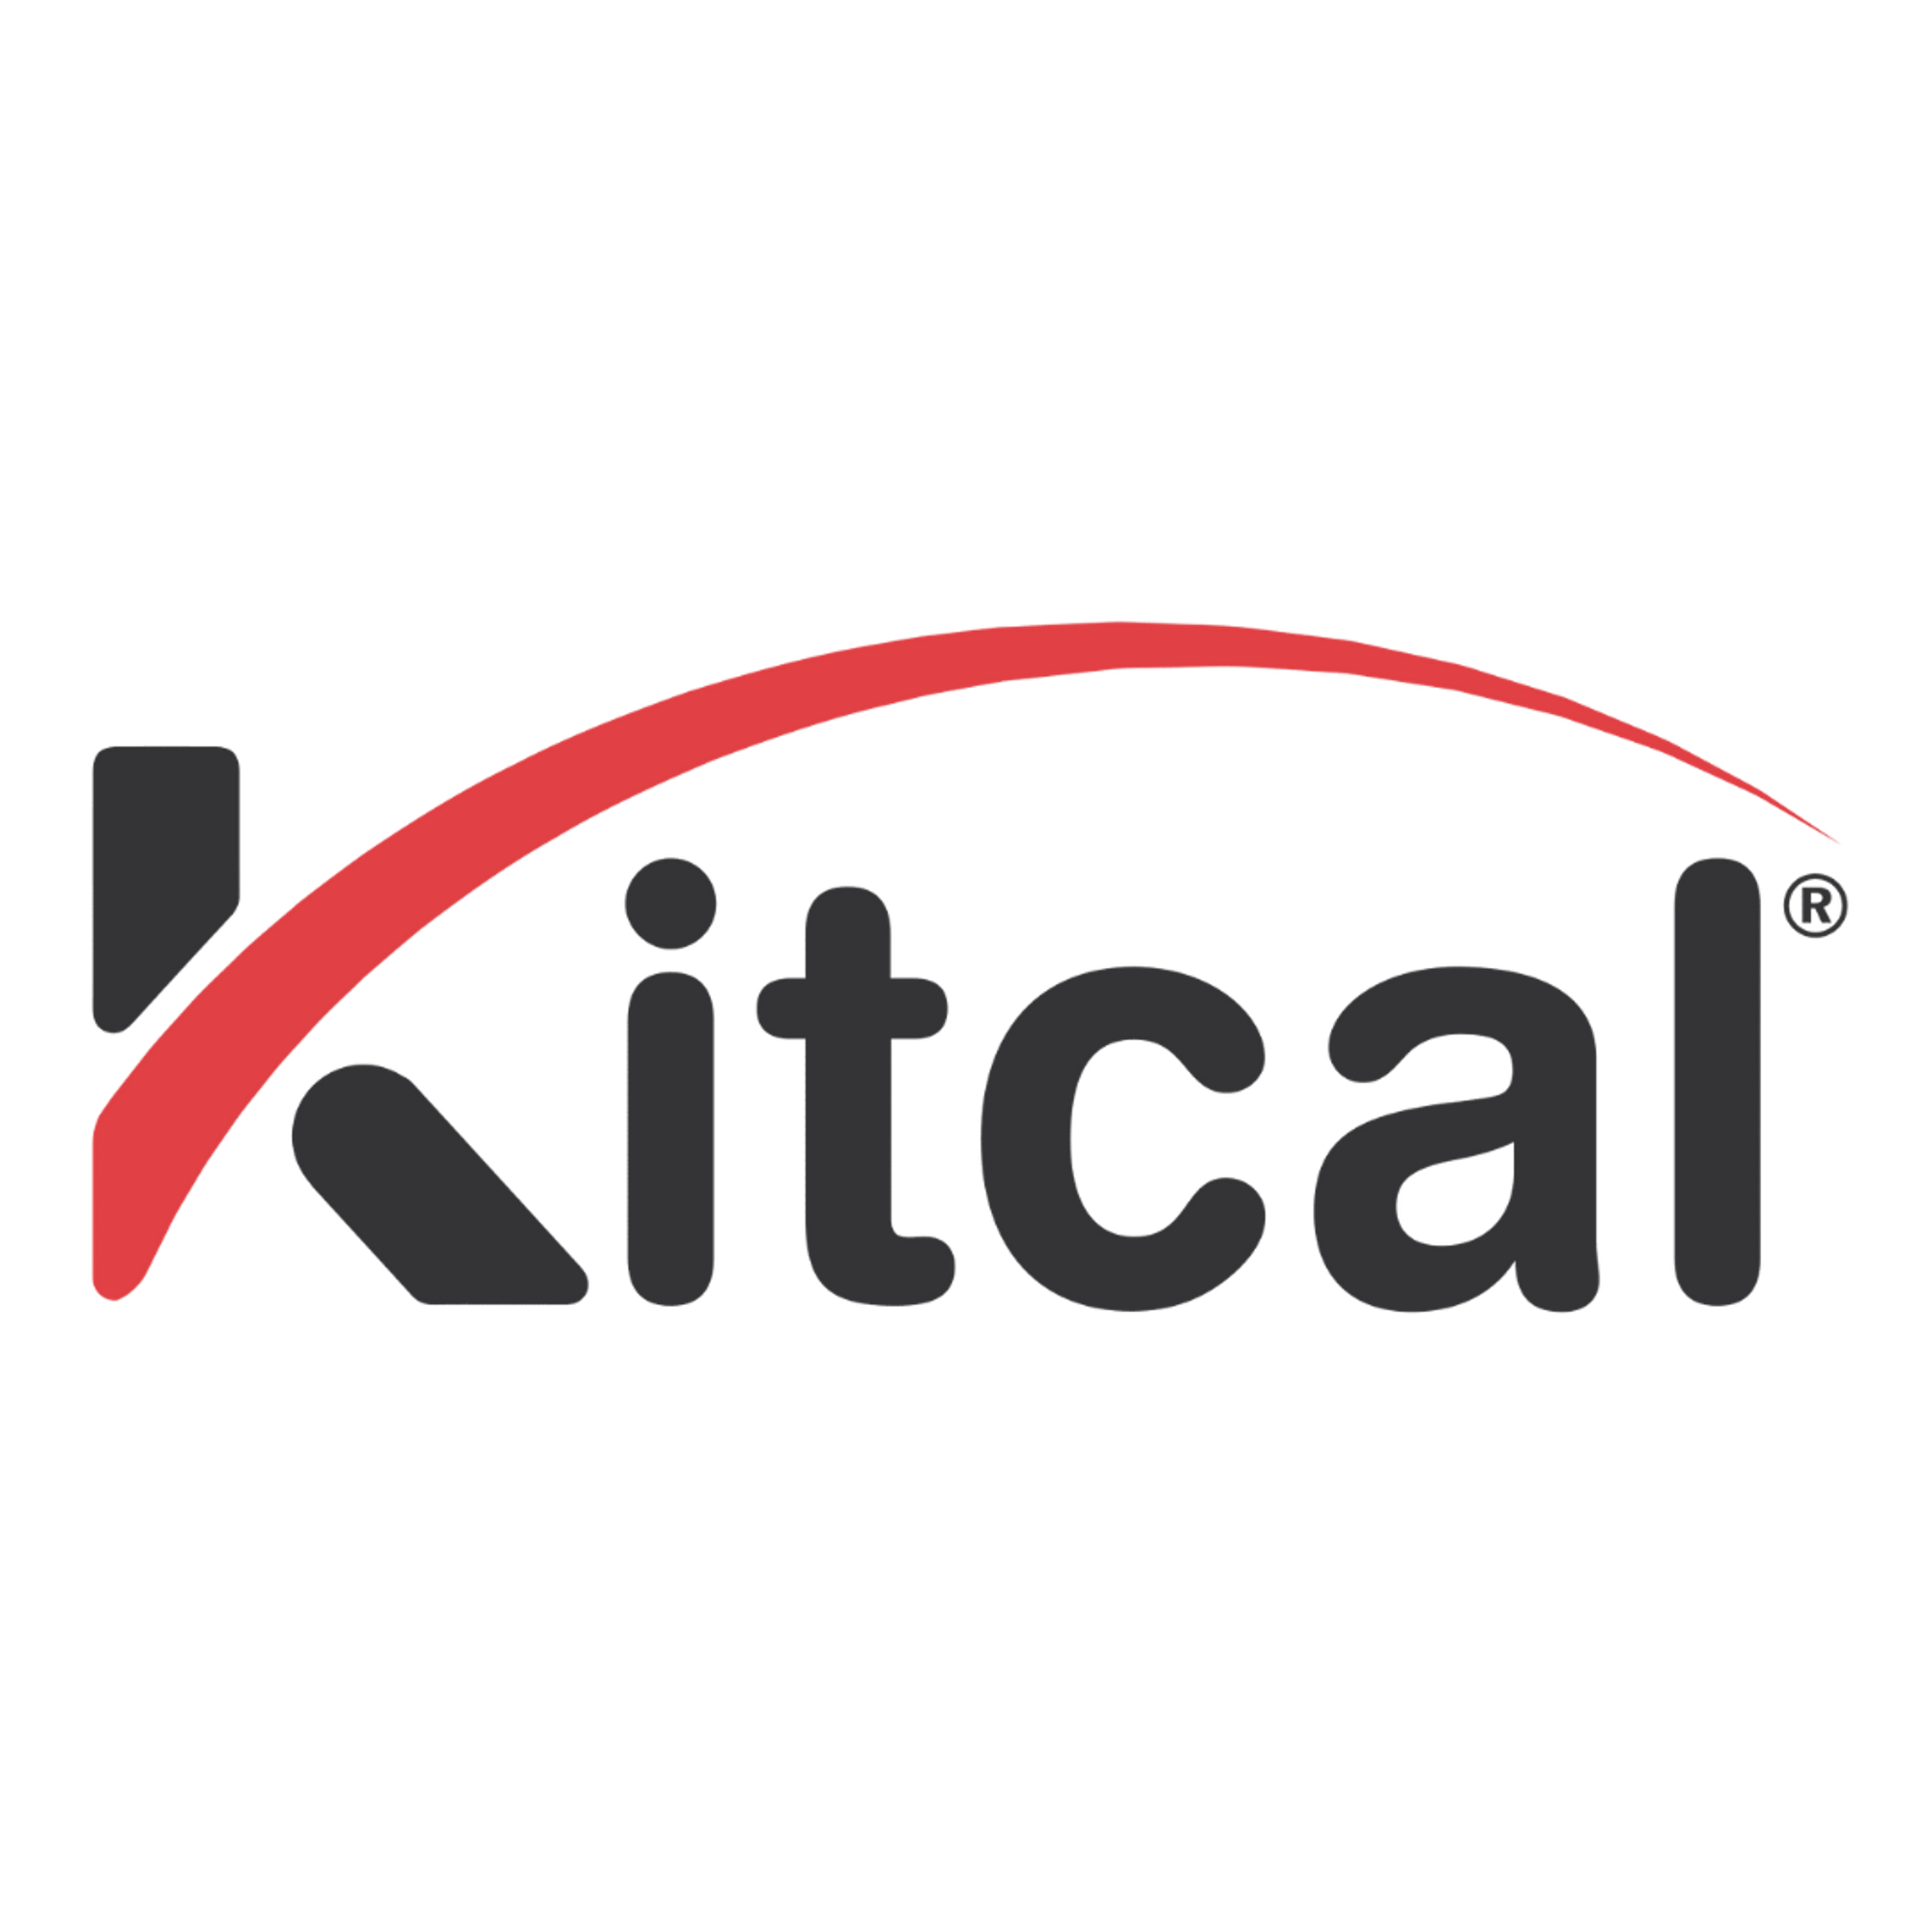 Kitcal